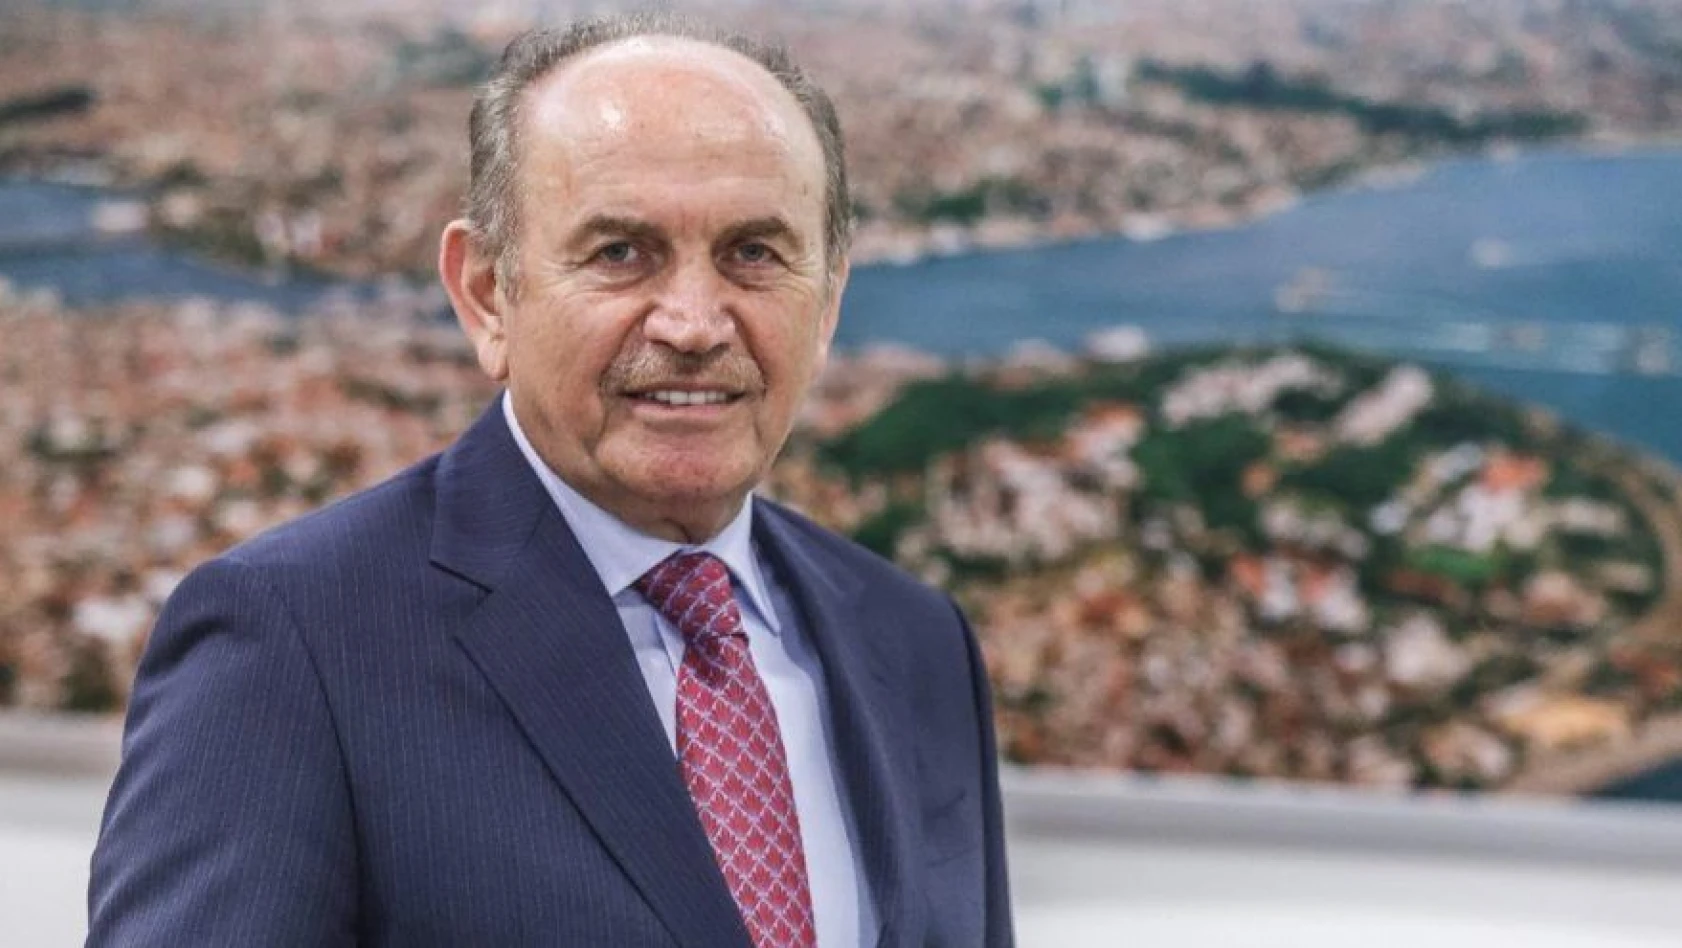 Eski İstanbul Büyükşehir Belediye Başkanı Kadir Topbaş hayatını kaybetti